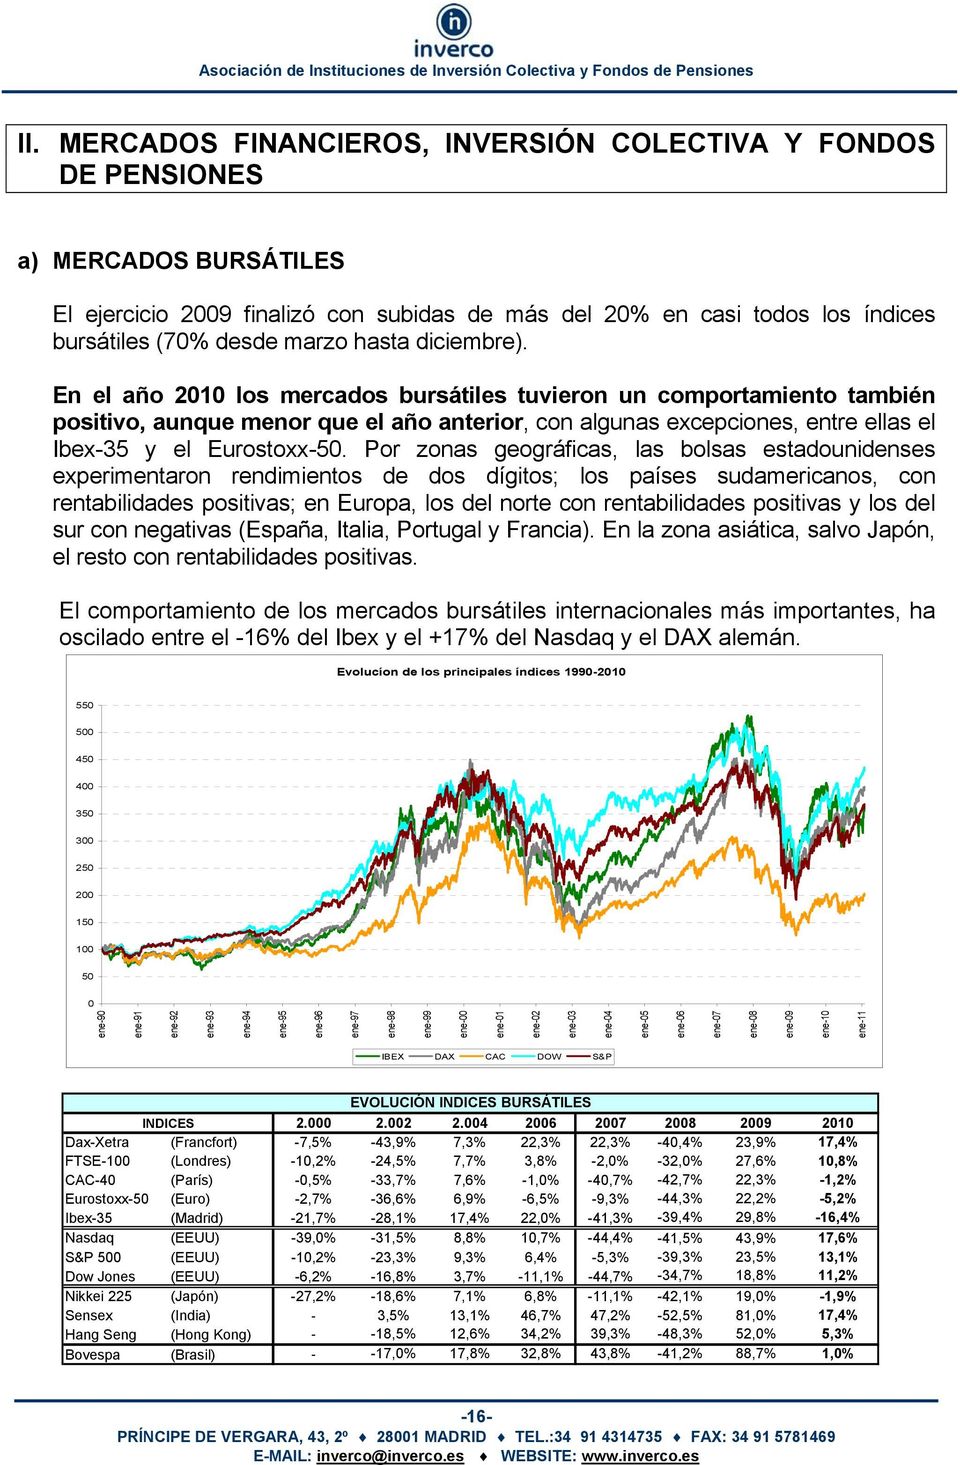 En el año 2010 los mercados bursátiles tuvieron un comportamiento también positivo, aunque menor que el año anterior, con algunas excepciones, entre ellas el Ibex-35 y el Eurostoxx-50.